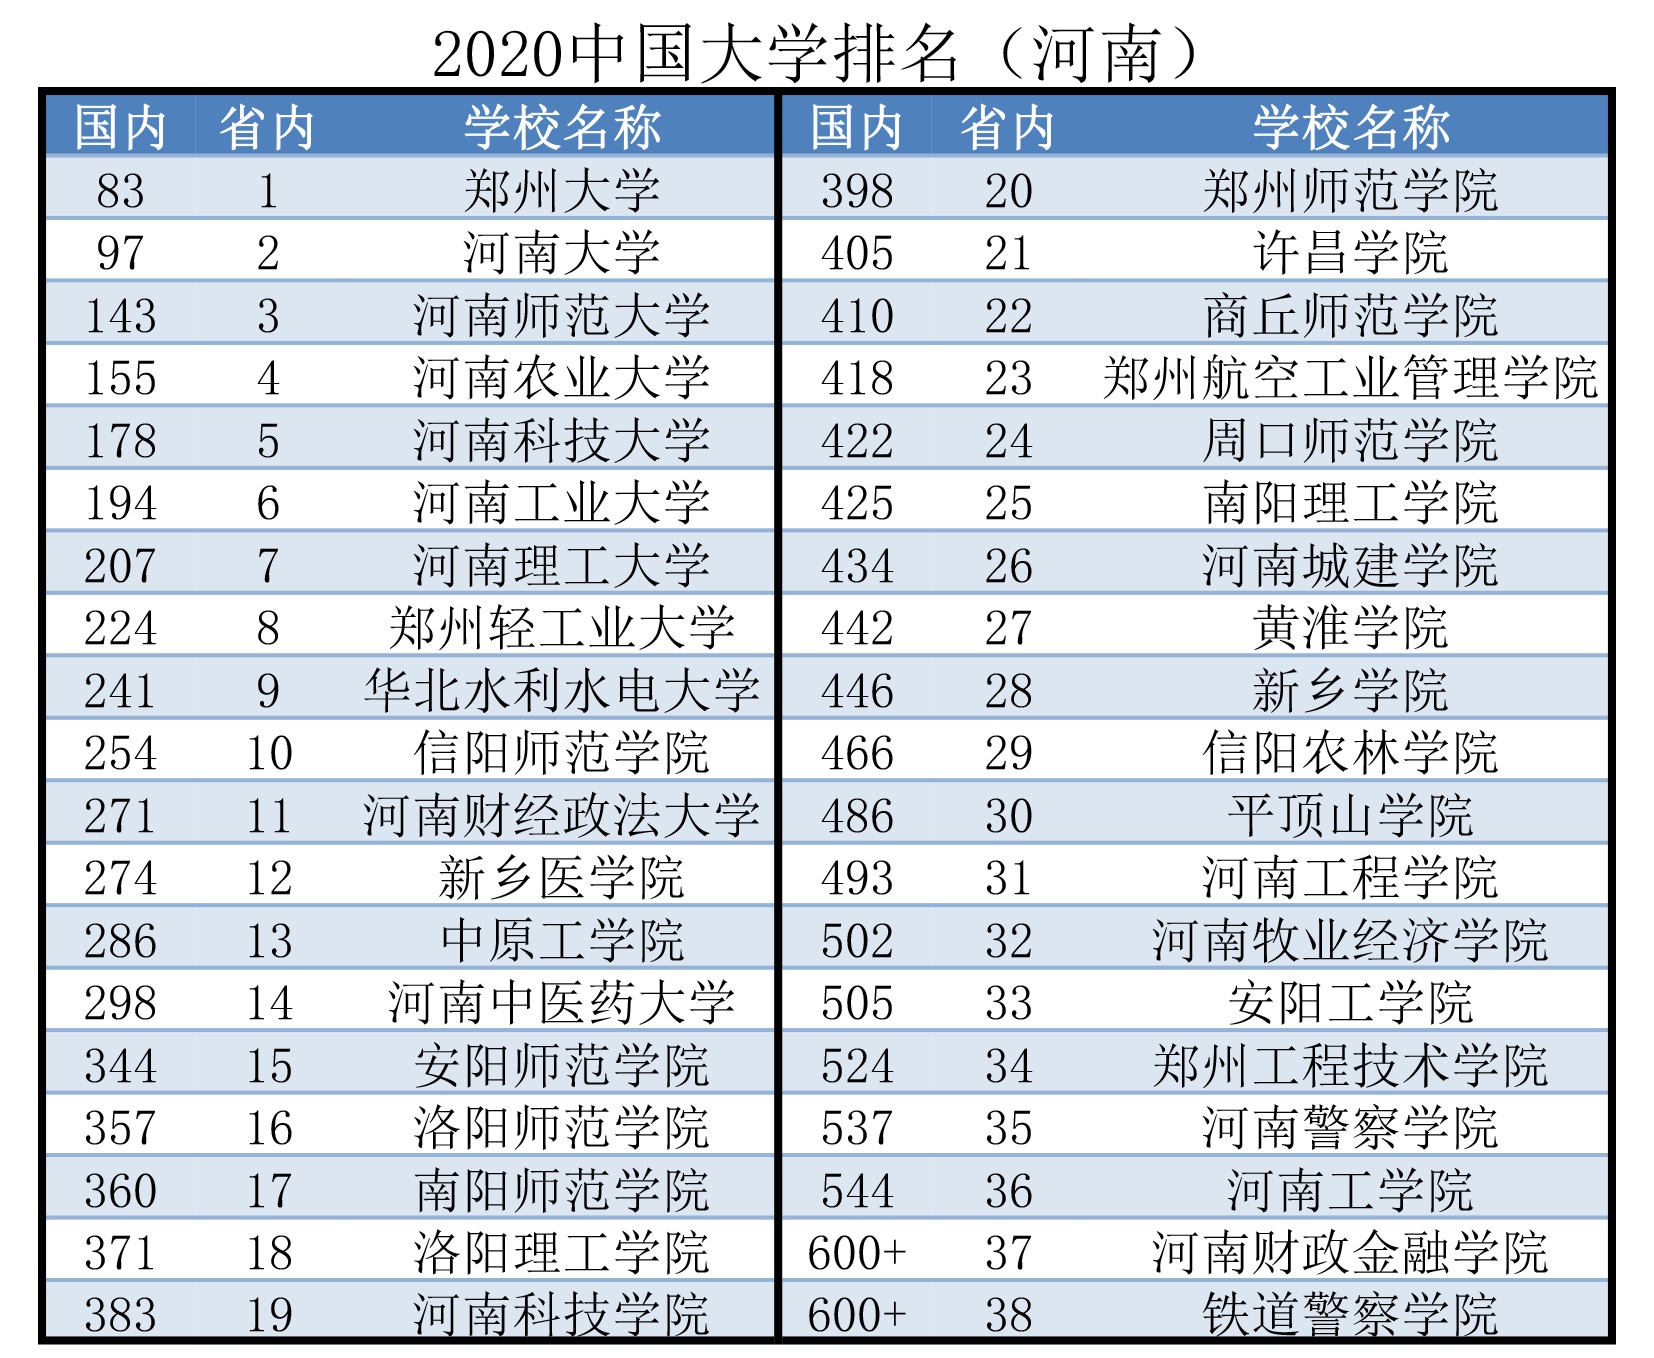 4 , 深圳大学最新排名：中国高校最新排名